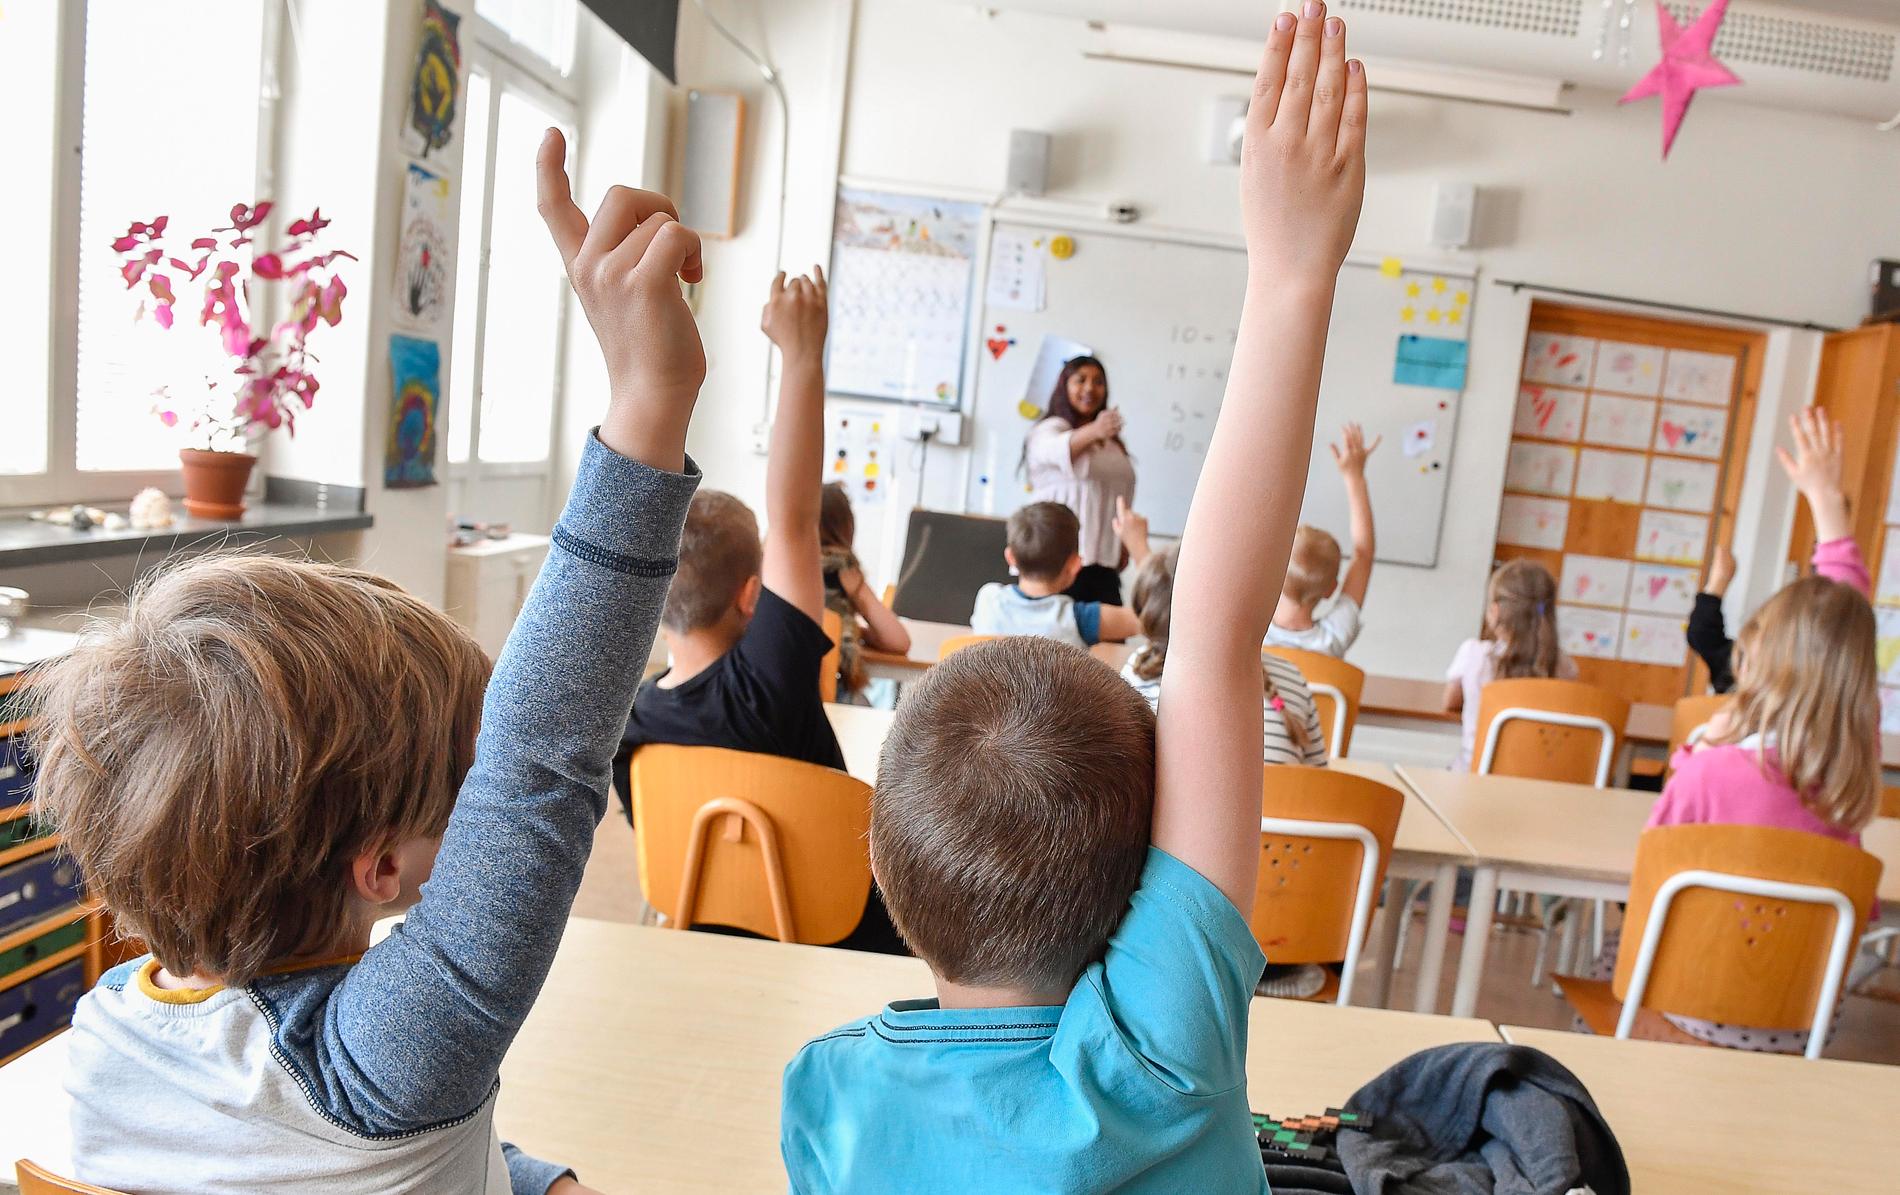 Svenska fjärdeklassares läsförmåga har rasat sedan 2016 enligt den stora internationella undersökningen Prils 2021.